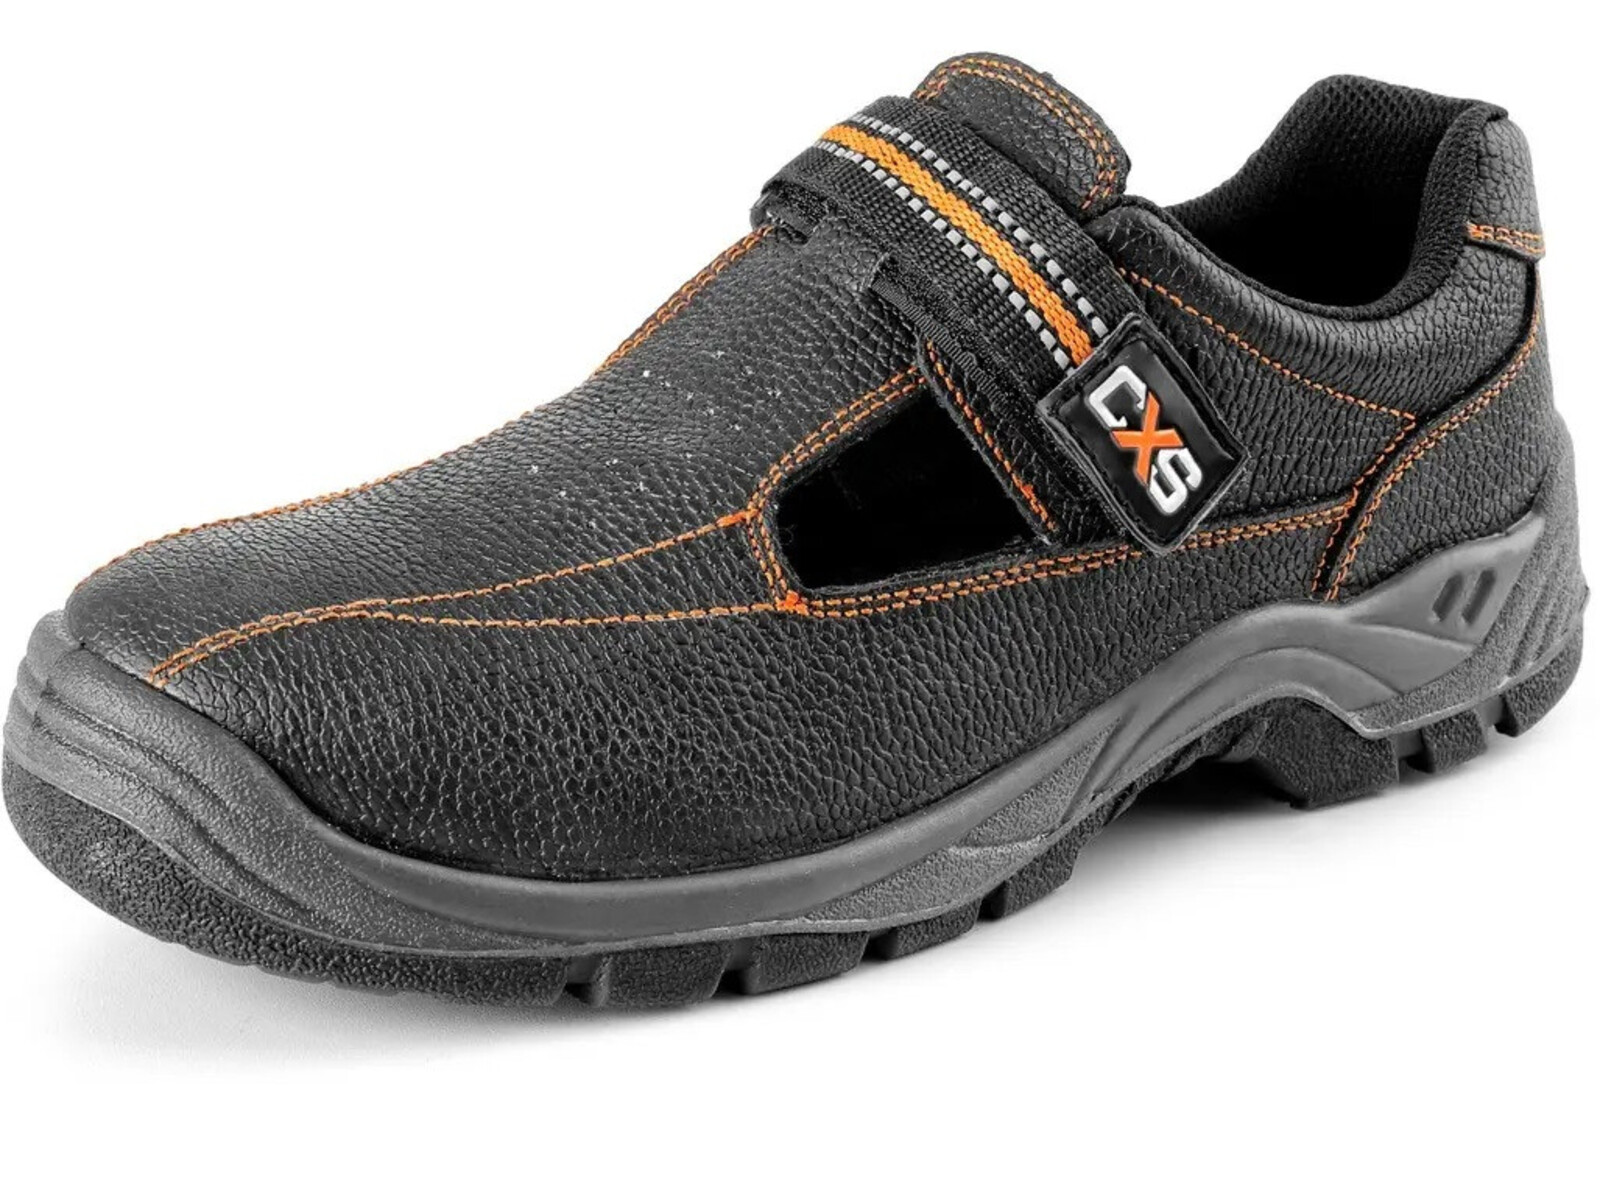 Pracovné sandále CXS Stone Nefrit O1 FO SRC - veľkosť: 39, farba: čierna/oranžová